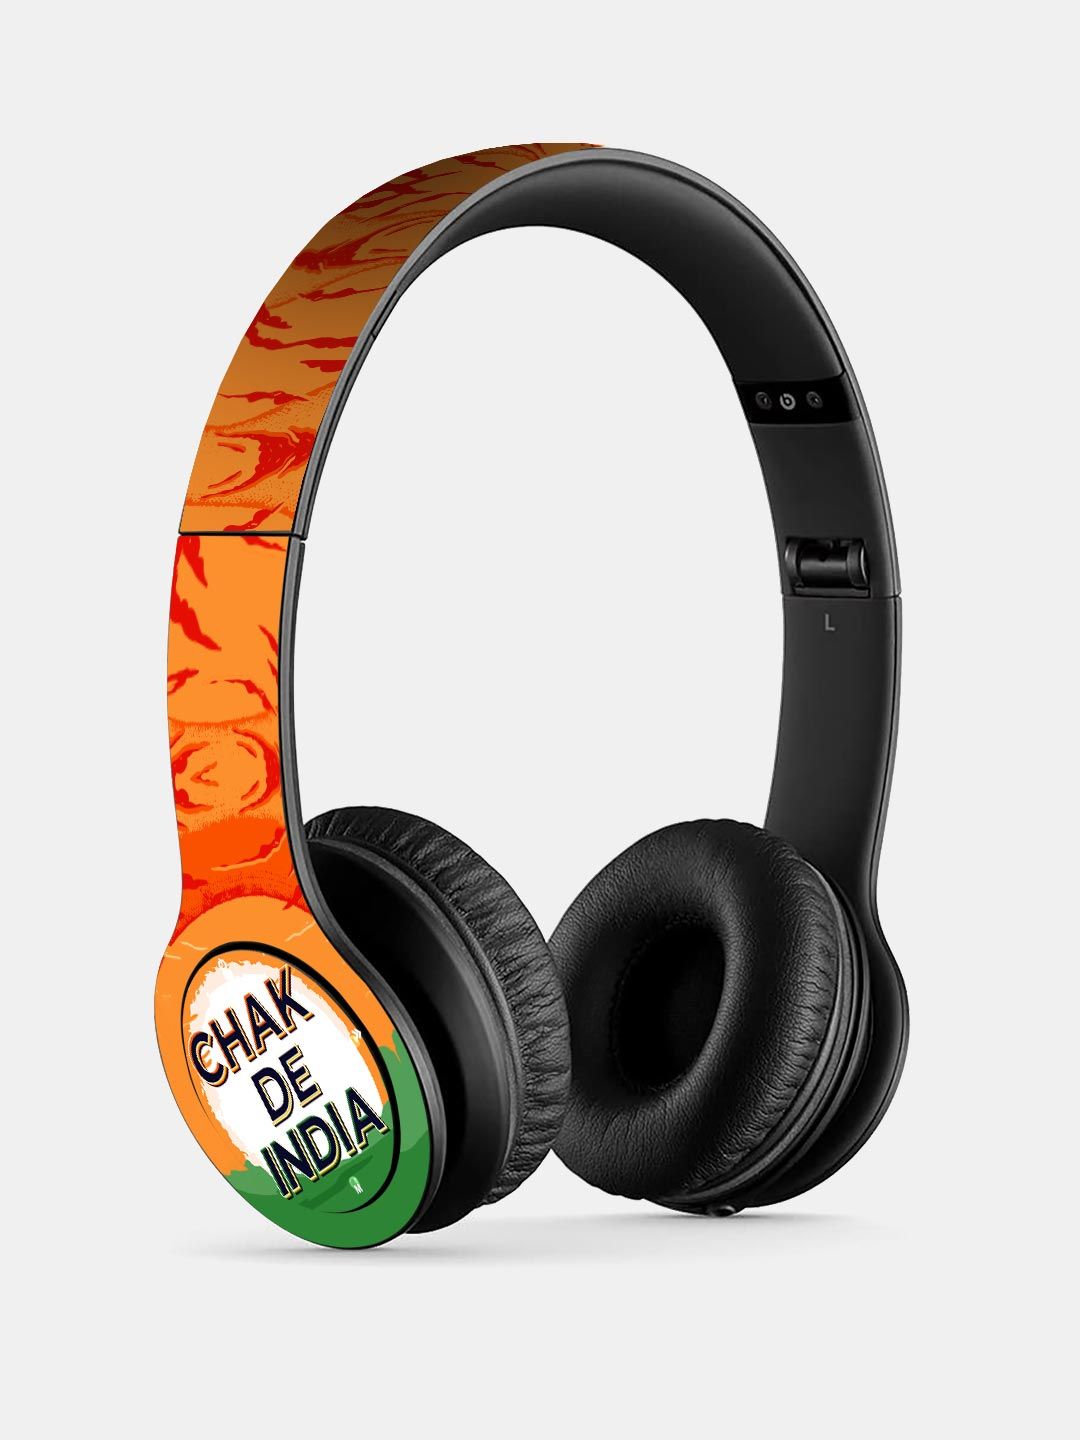 Buy SM Chak De India - P47 Wireless On Ear Headphones Headphones Online